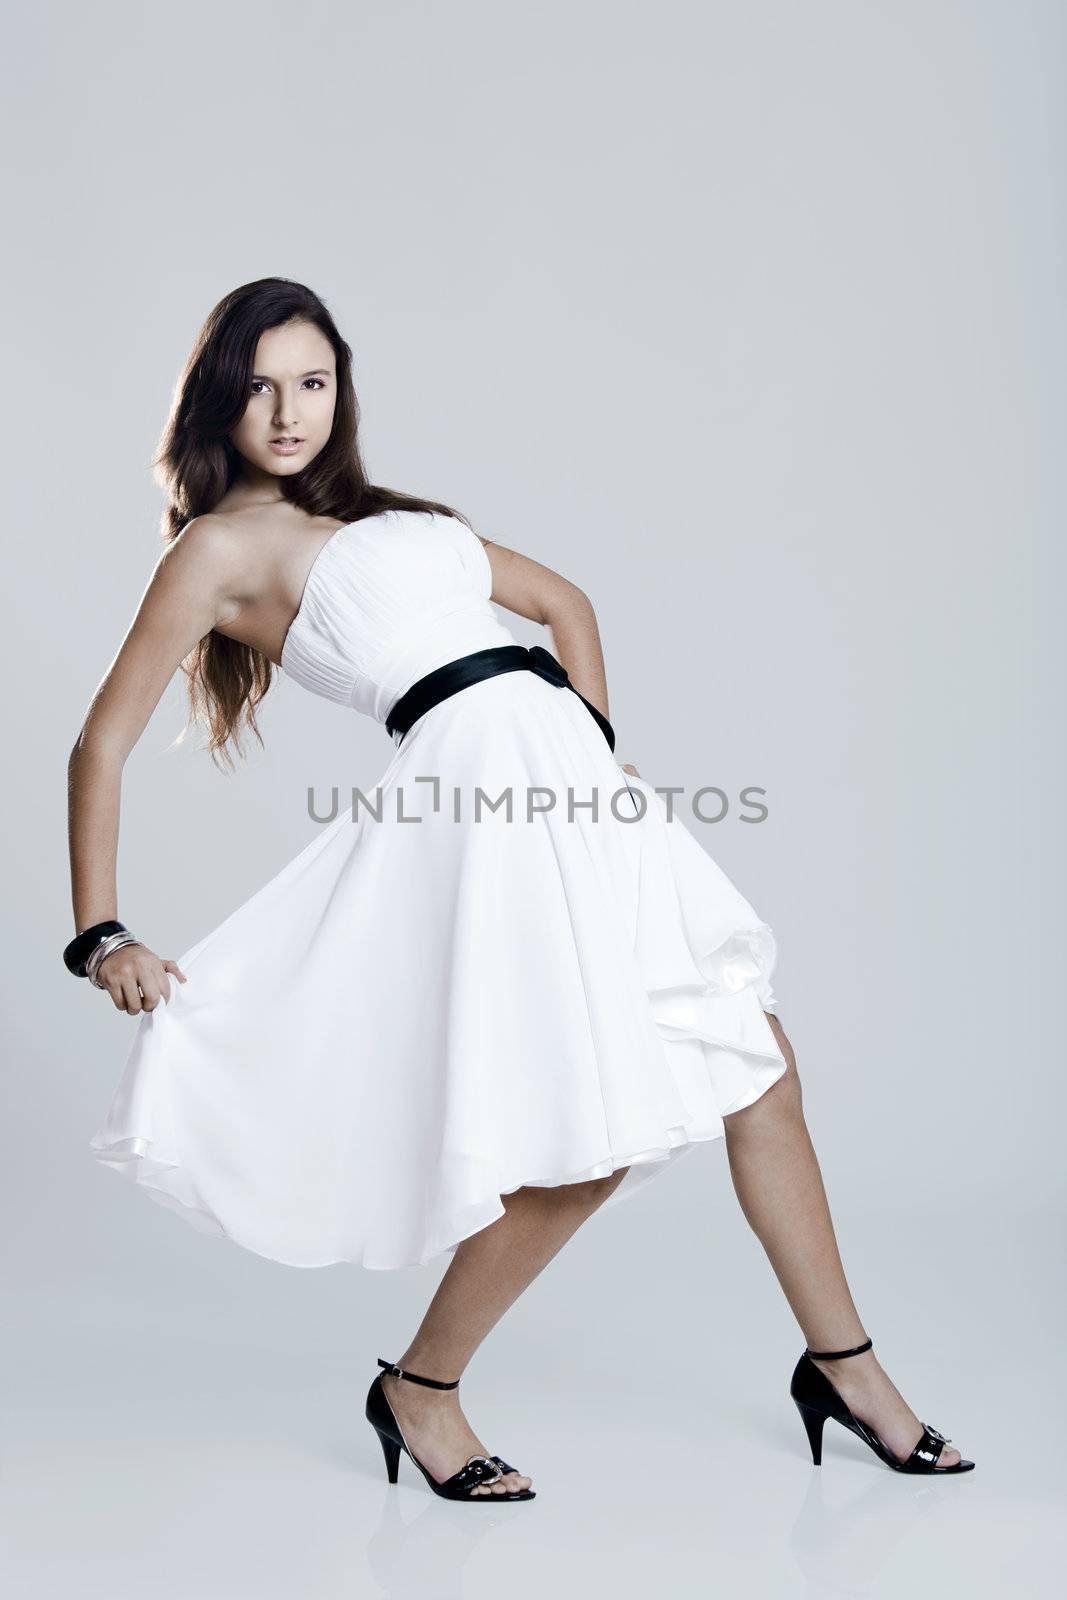 Beautiful and sexy woman wearing a wonderful white dress